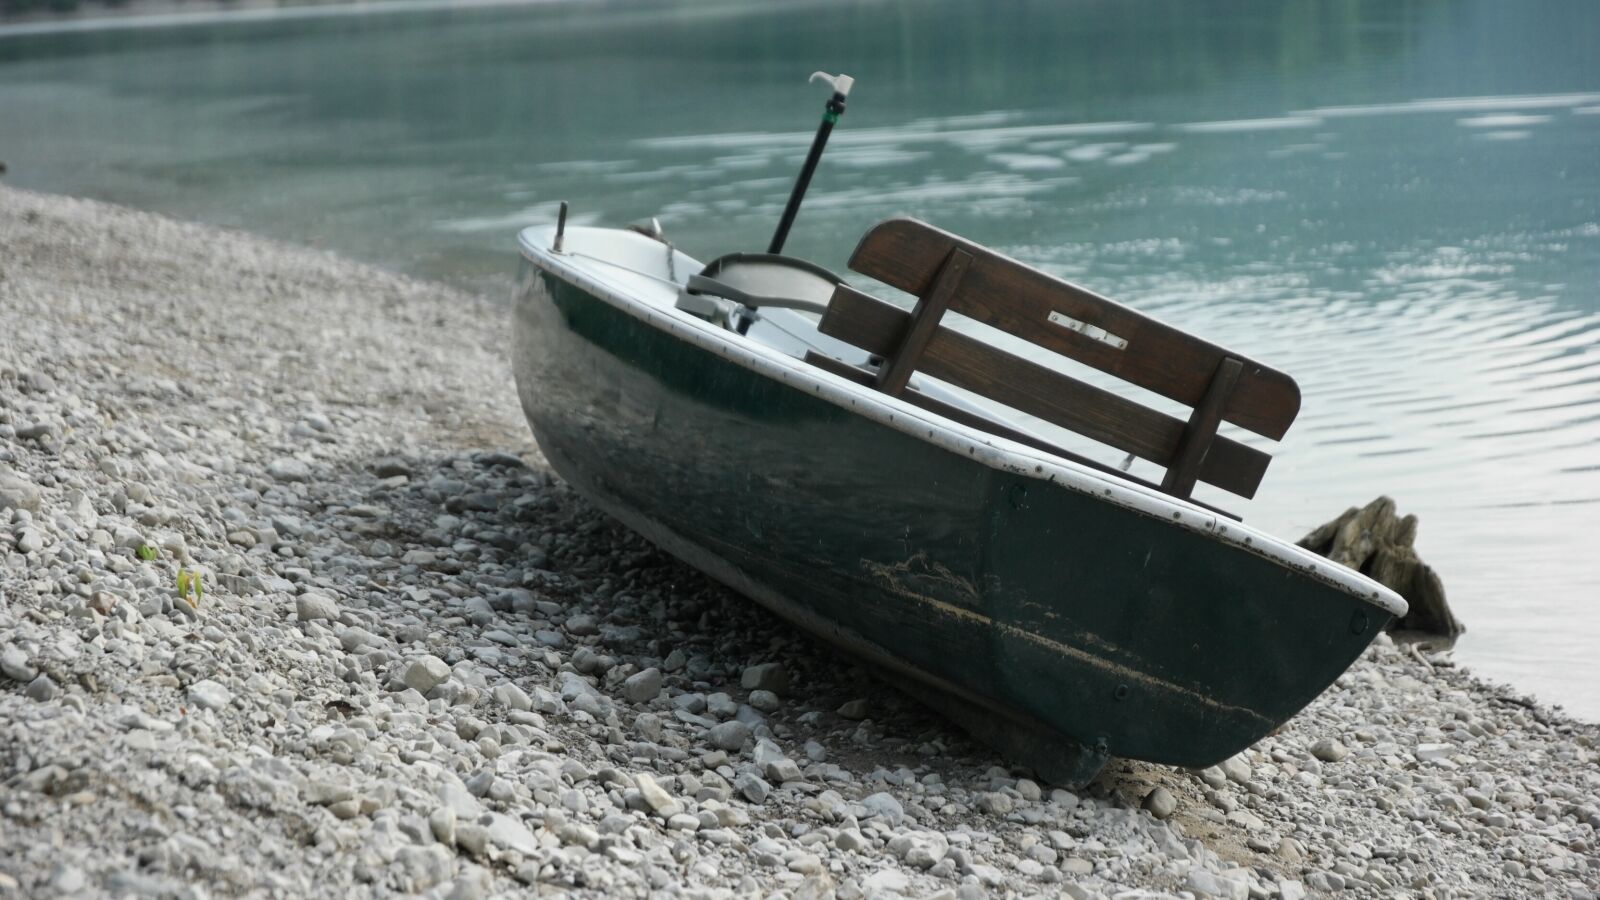 Samsung NX1 sample photo. Boat, bank, lake photography